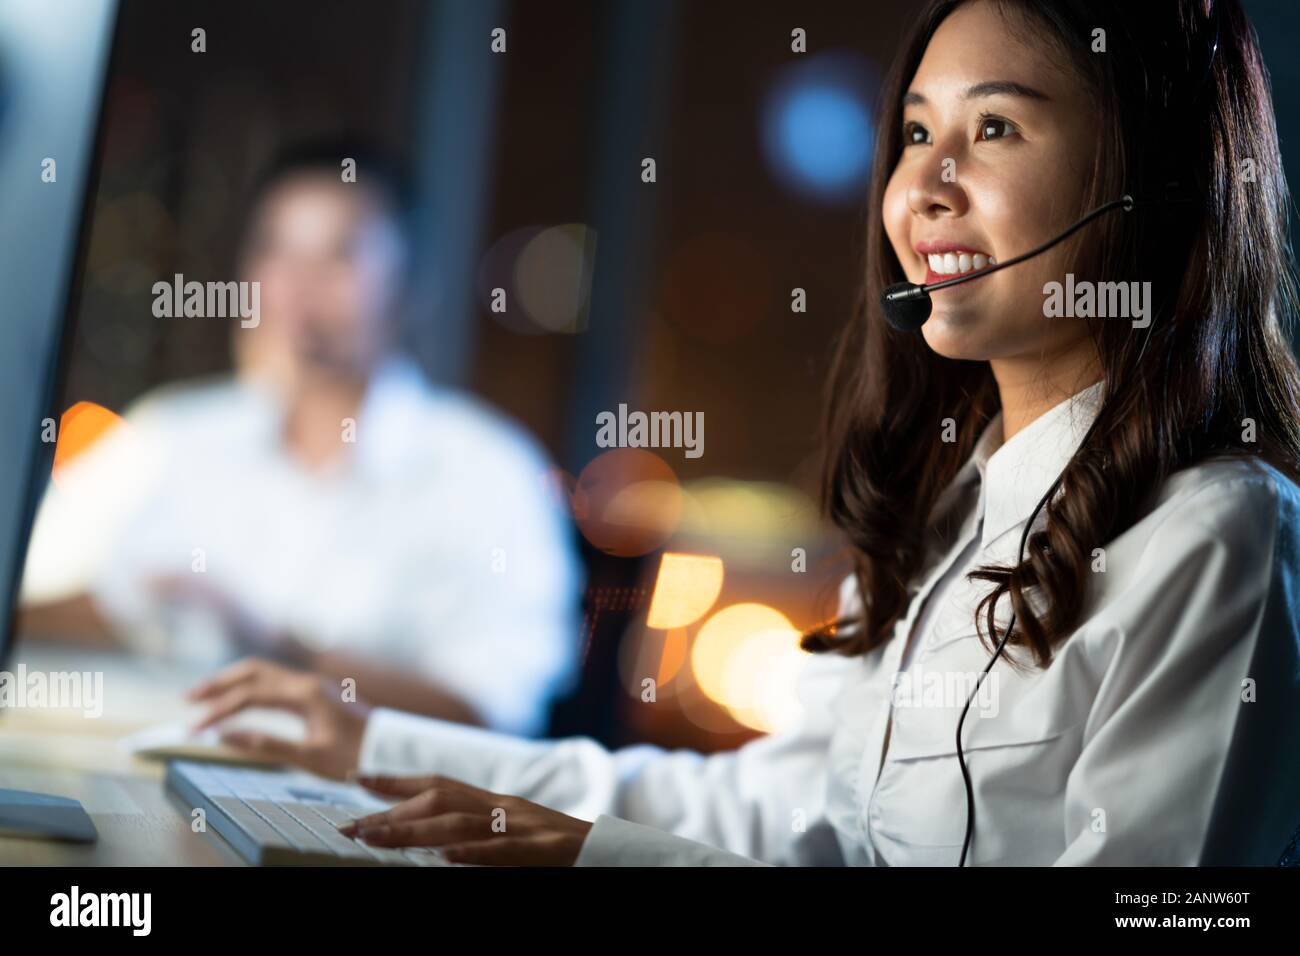 La mujer asiática trabaja como servicio de atención al cliente o como operador telefónico del centro de llamadas, utilizando el ordenador de sobremesa y el auricular para micrófono, turno de noche Foto de stock